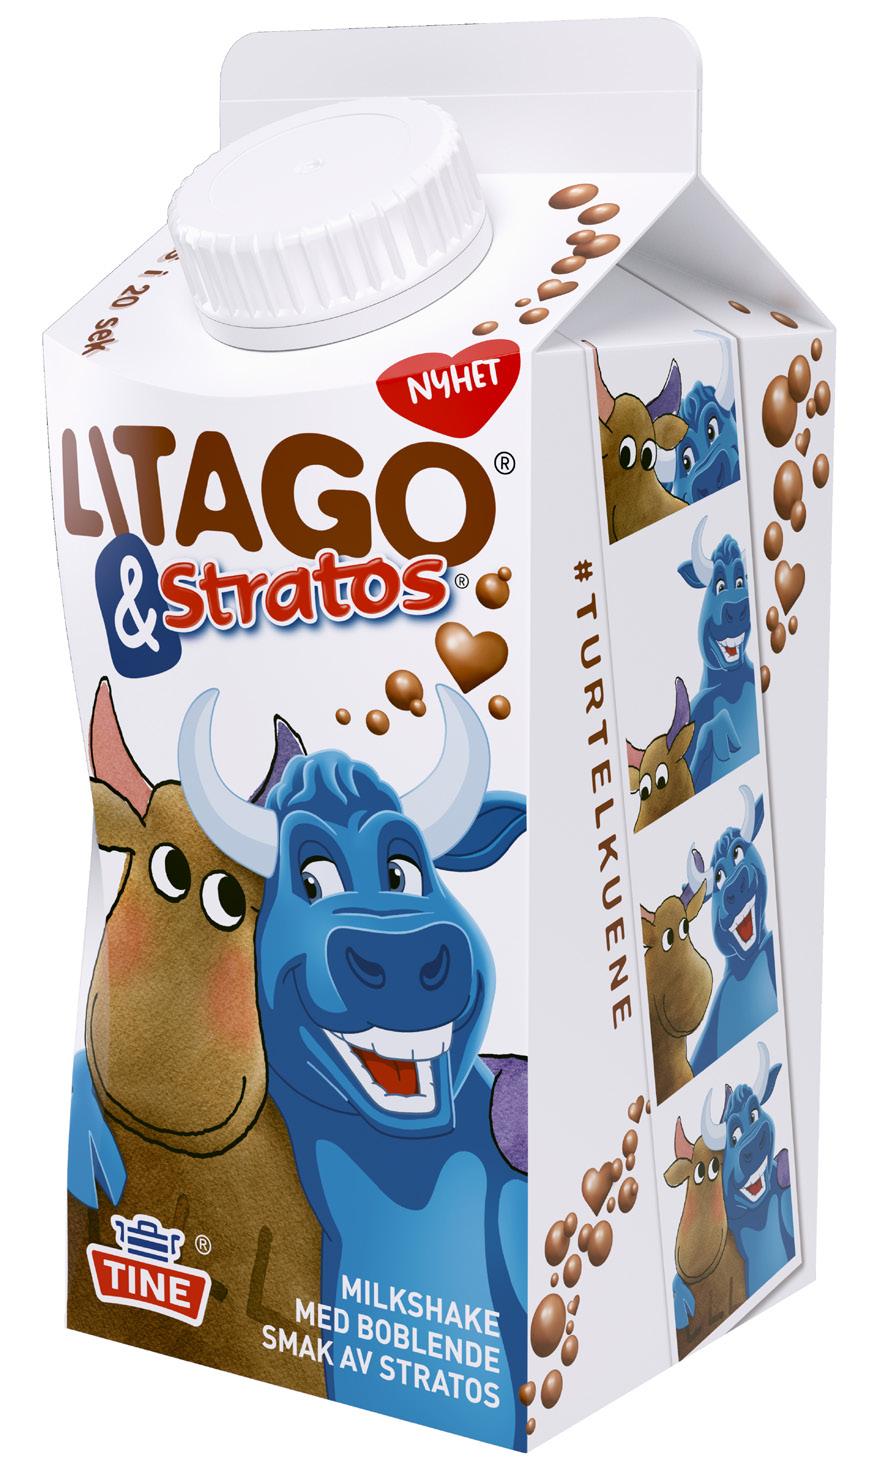 Litago & Stratos Milkshake 250 ml VÅRENS MEST SJARMERENDE PRODUKTLANSERING To sterke merkevarer finner hverandre og lanserer spennende produkter sammen Enestående nyhetsverdi gjennom overraskende og